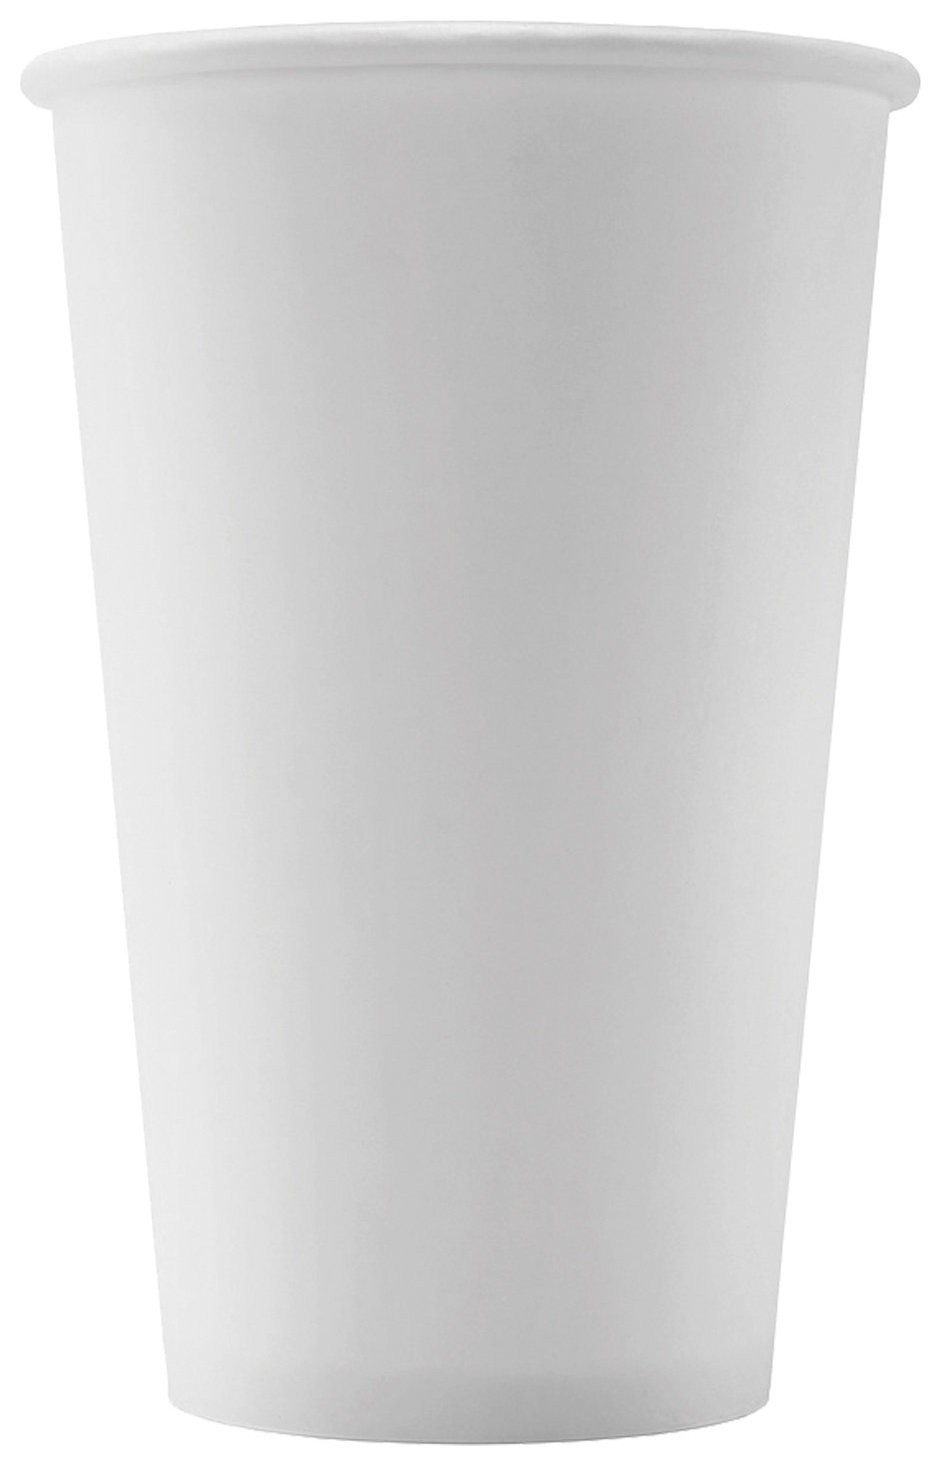 Одноразовые стаканы 400 мл, комплект 50 шт., бумажные однослойные, белые, холодное/горячее, формация, Hb90-530-0000